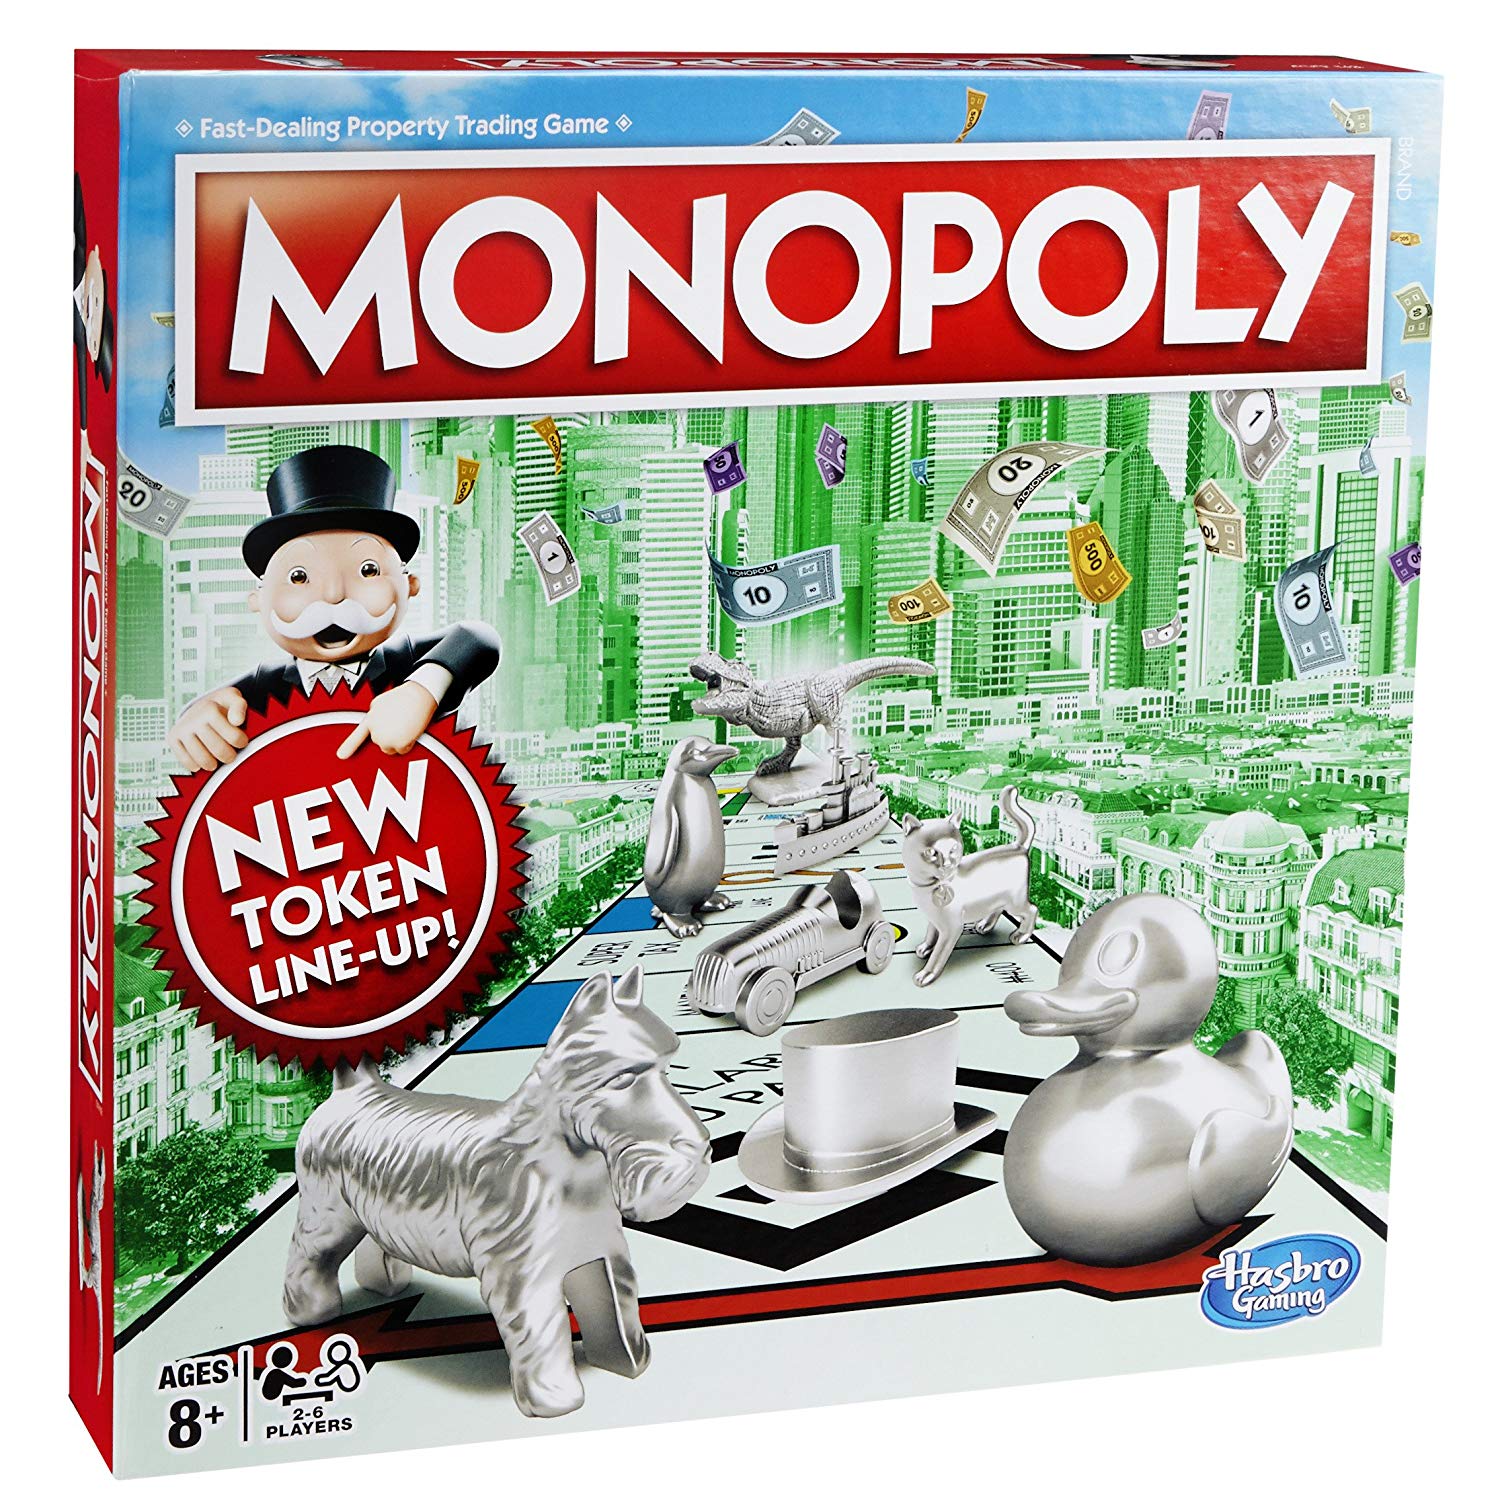 Игра монополия hasbro. Классическая Монополия. Обновленная (c1009). Настольная игра "Монополия классическая" c1009 /Hasbro/. Настольная игра Hasbro Monopoly. Монополия классика Monopoly c1009.